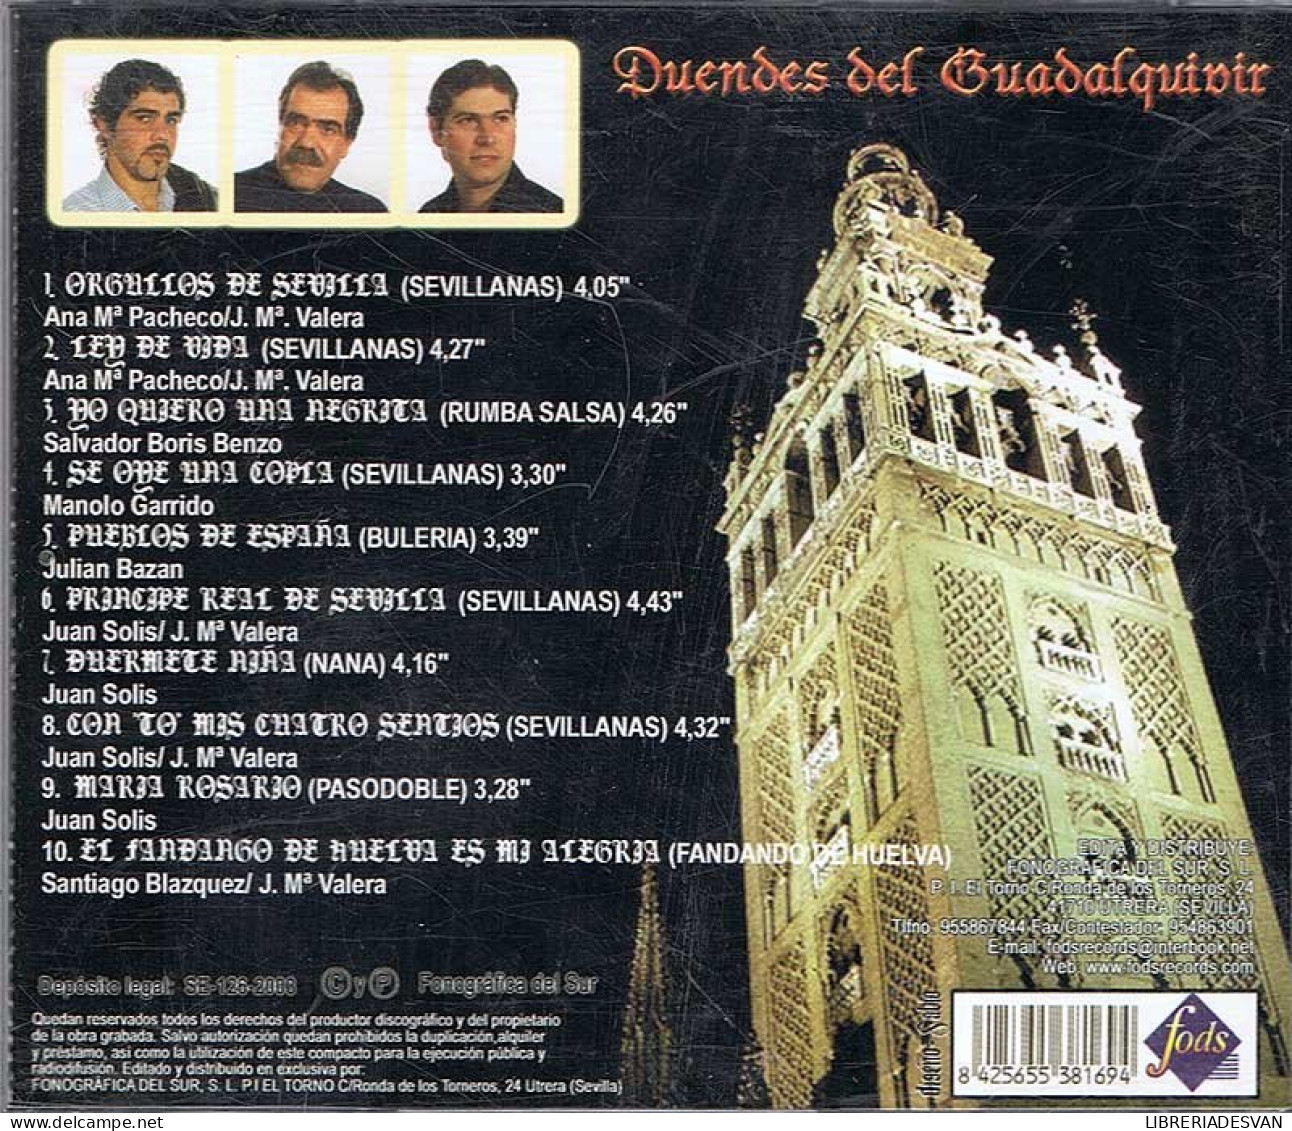 Duendes Del Guadalquivir - Cosas De La Tierra Mía. CD - Autres - Musique Espagnole